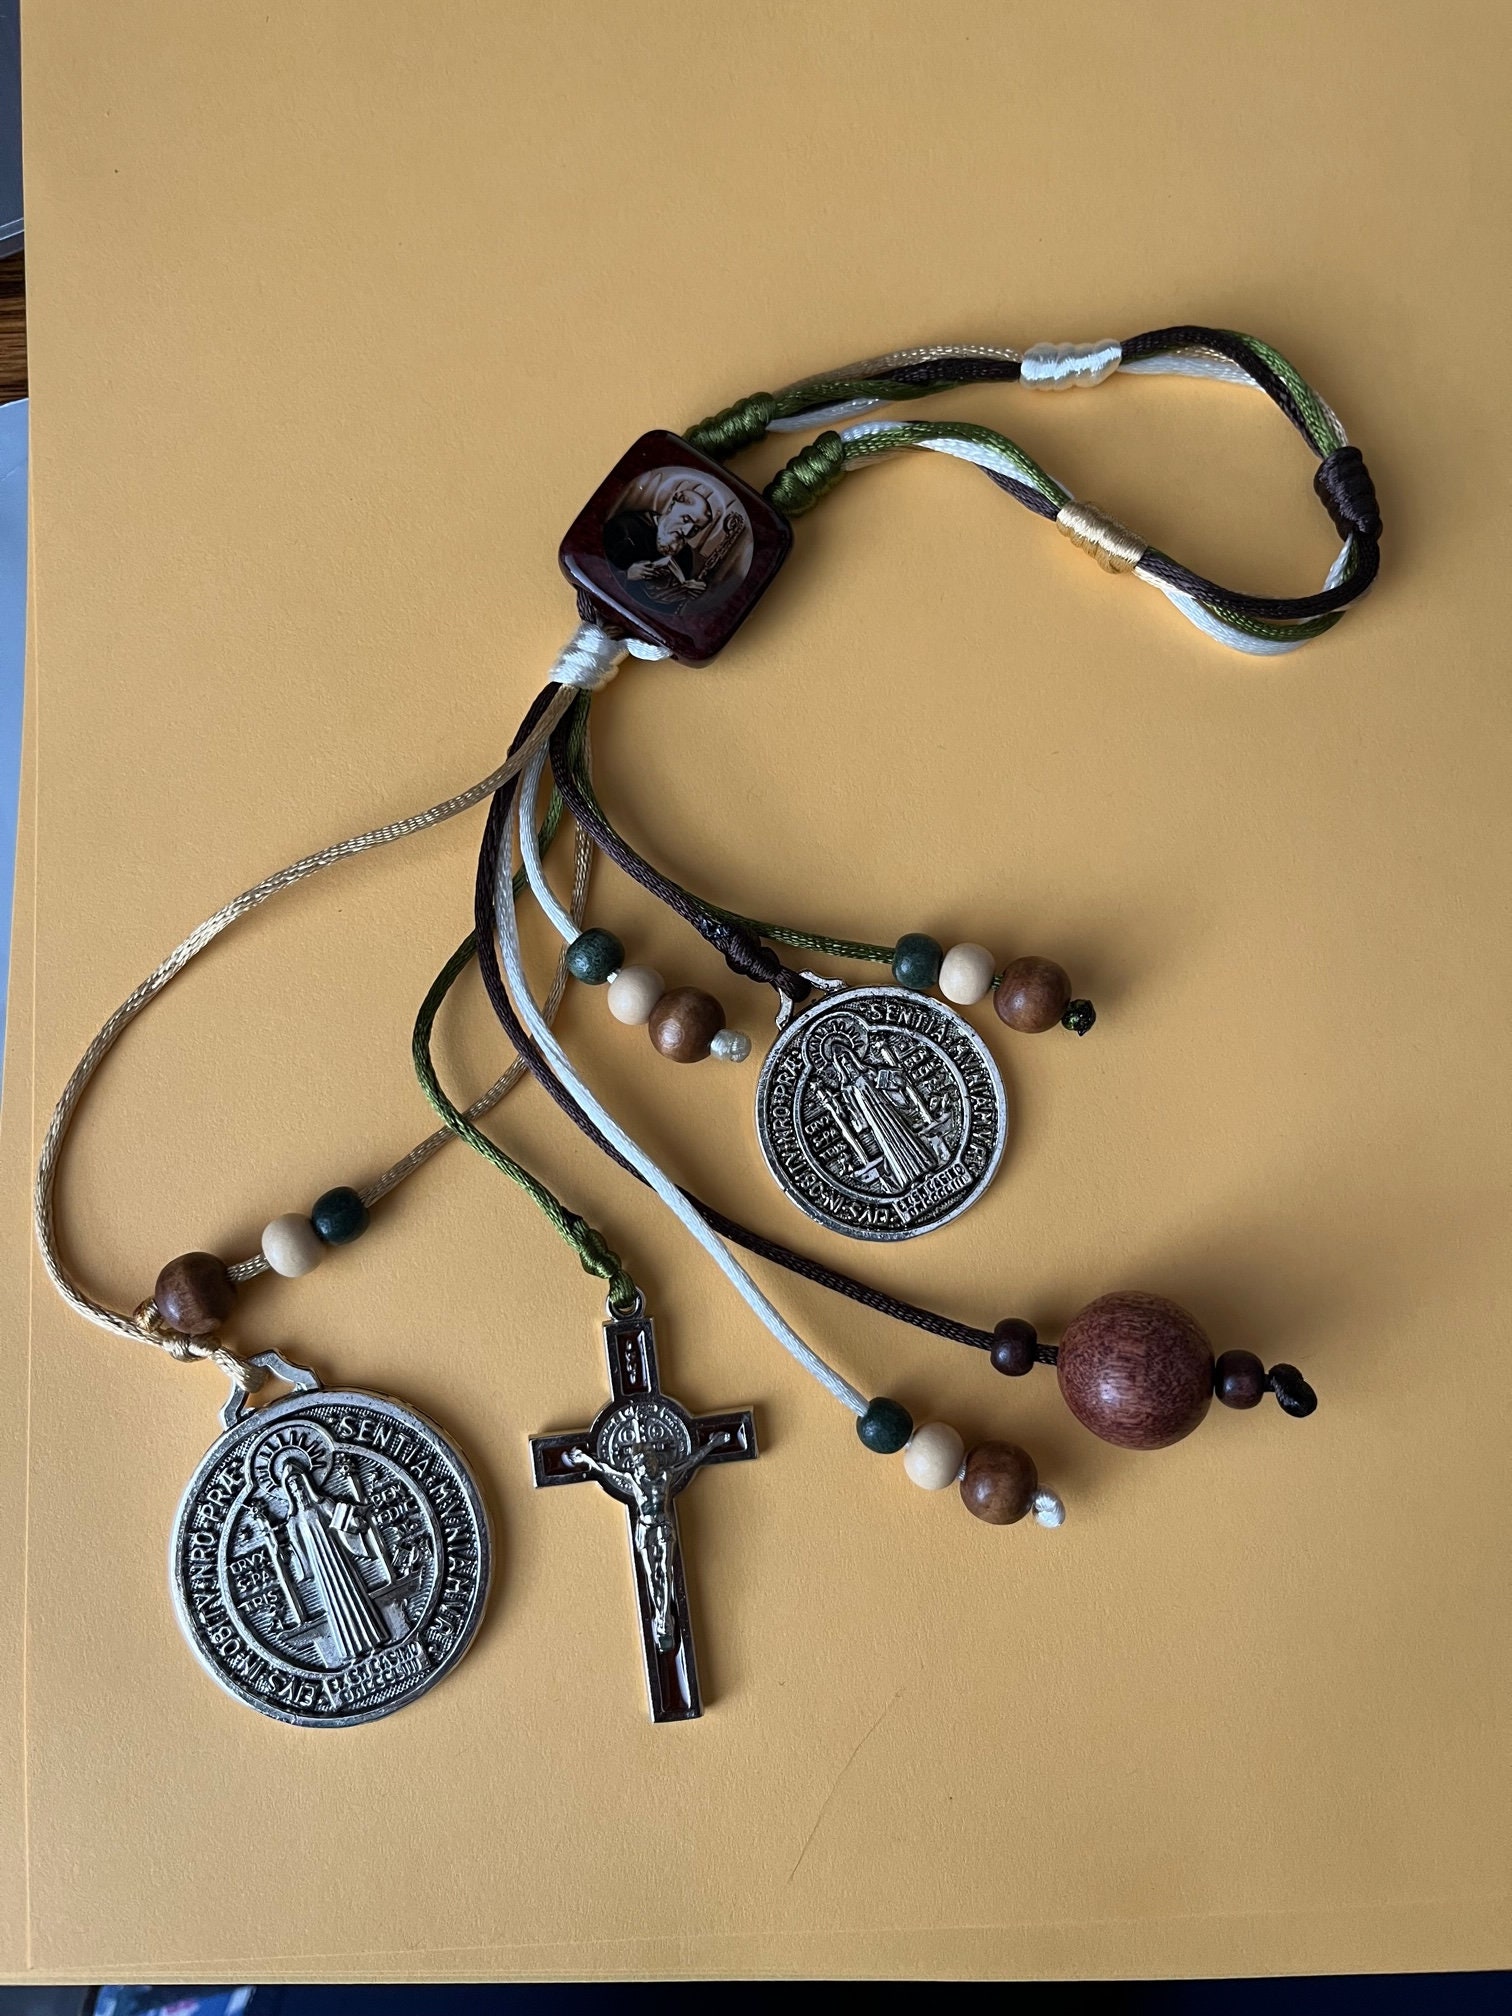 Saint Benedict Key Blessing Shiny Coat Medalla para Protección - Protección  del Hogar - Protección de Puertas - Percha de Pared Regalos Católicos 